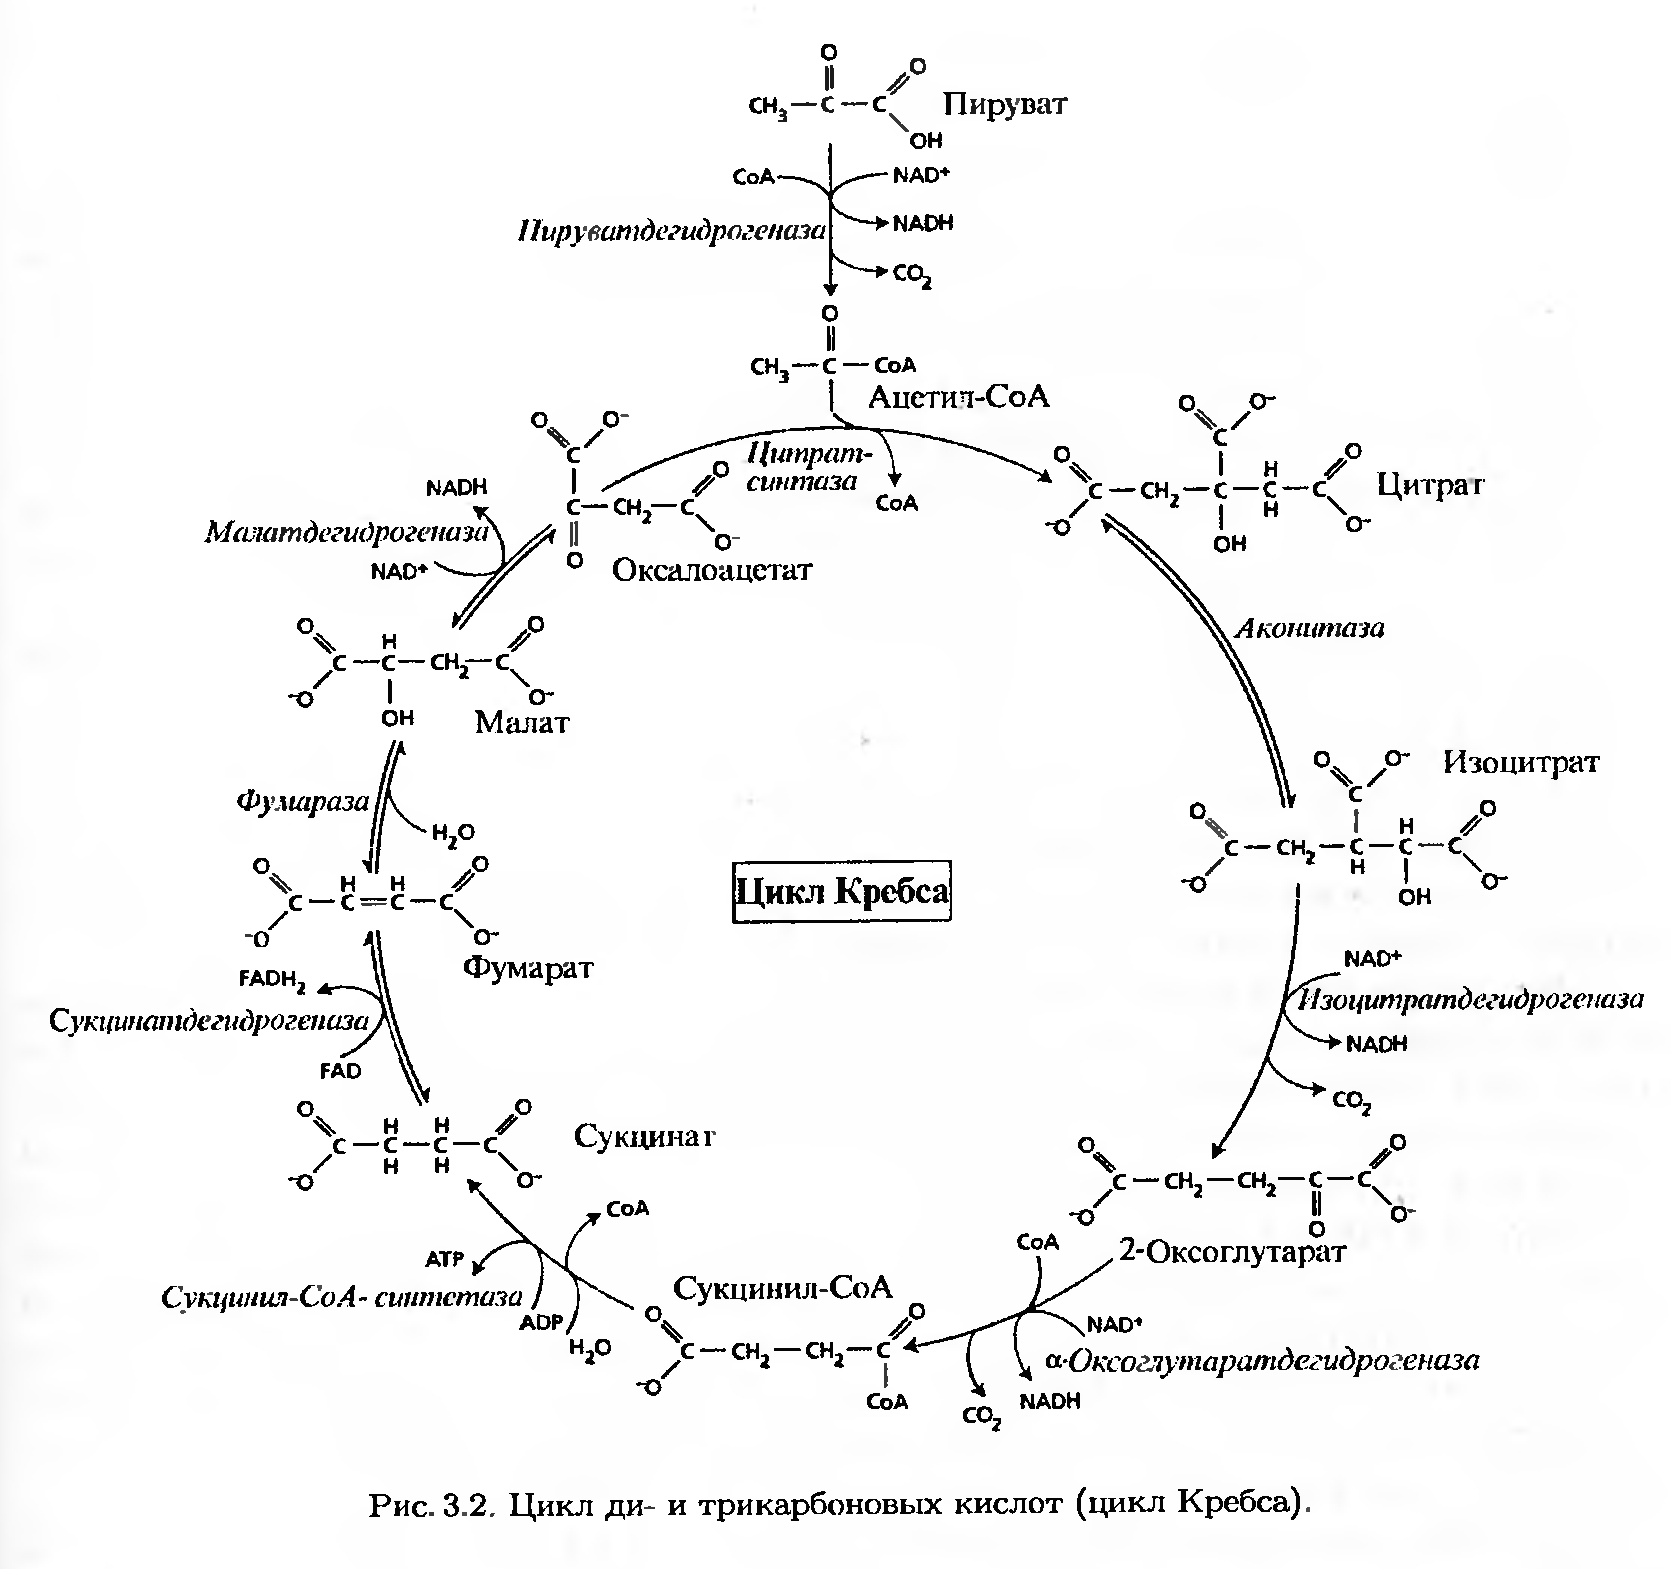 В цикле кребса образуется атф. Стадии цикла Кребса таблица. Схема клеточного дыхания цикл Кребса. Окисление Глюкозы цикл Кребса. Цикл Кребса 11 класс.